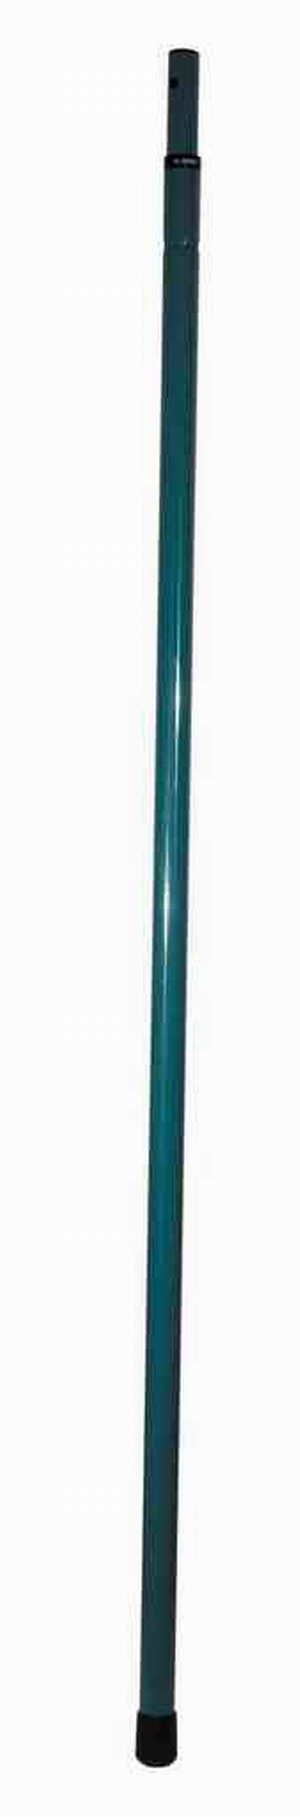 Ручка телескопическая RACO стальная  1,5-2,4м, для 4218-53/372C, 4218-53/376С в Кирове